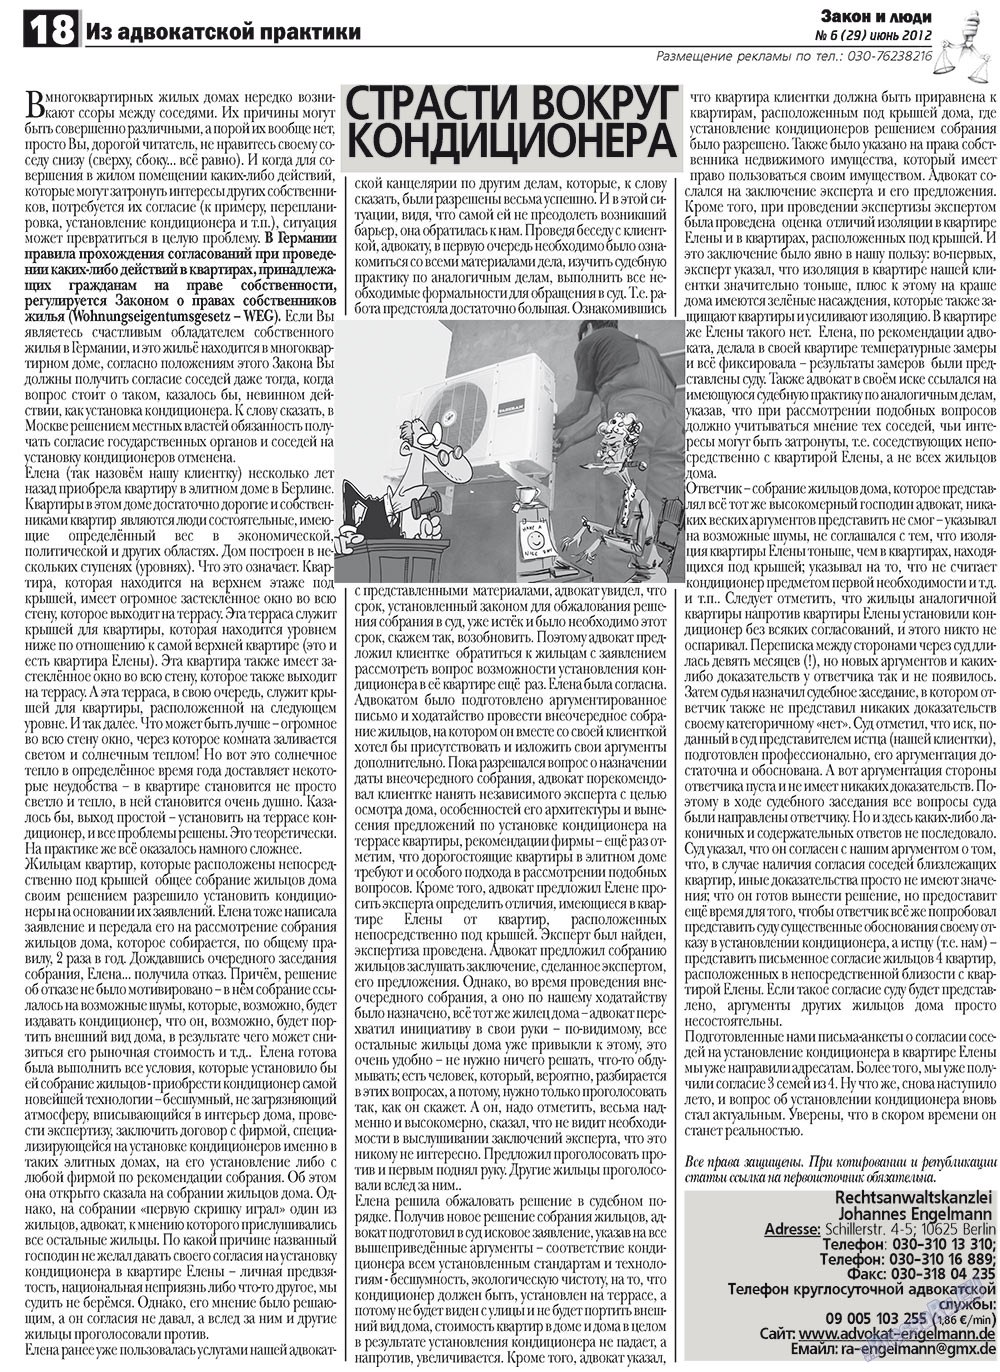 Закон и люди (газета). 2012 год, номер 6, стр. 18